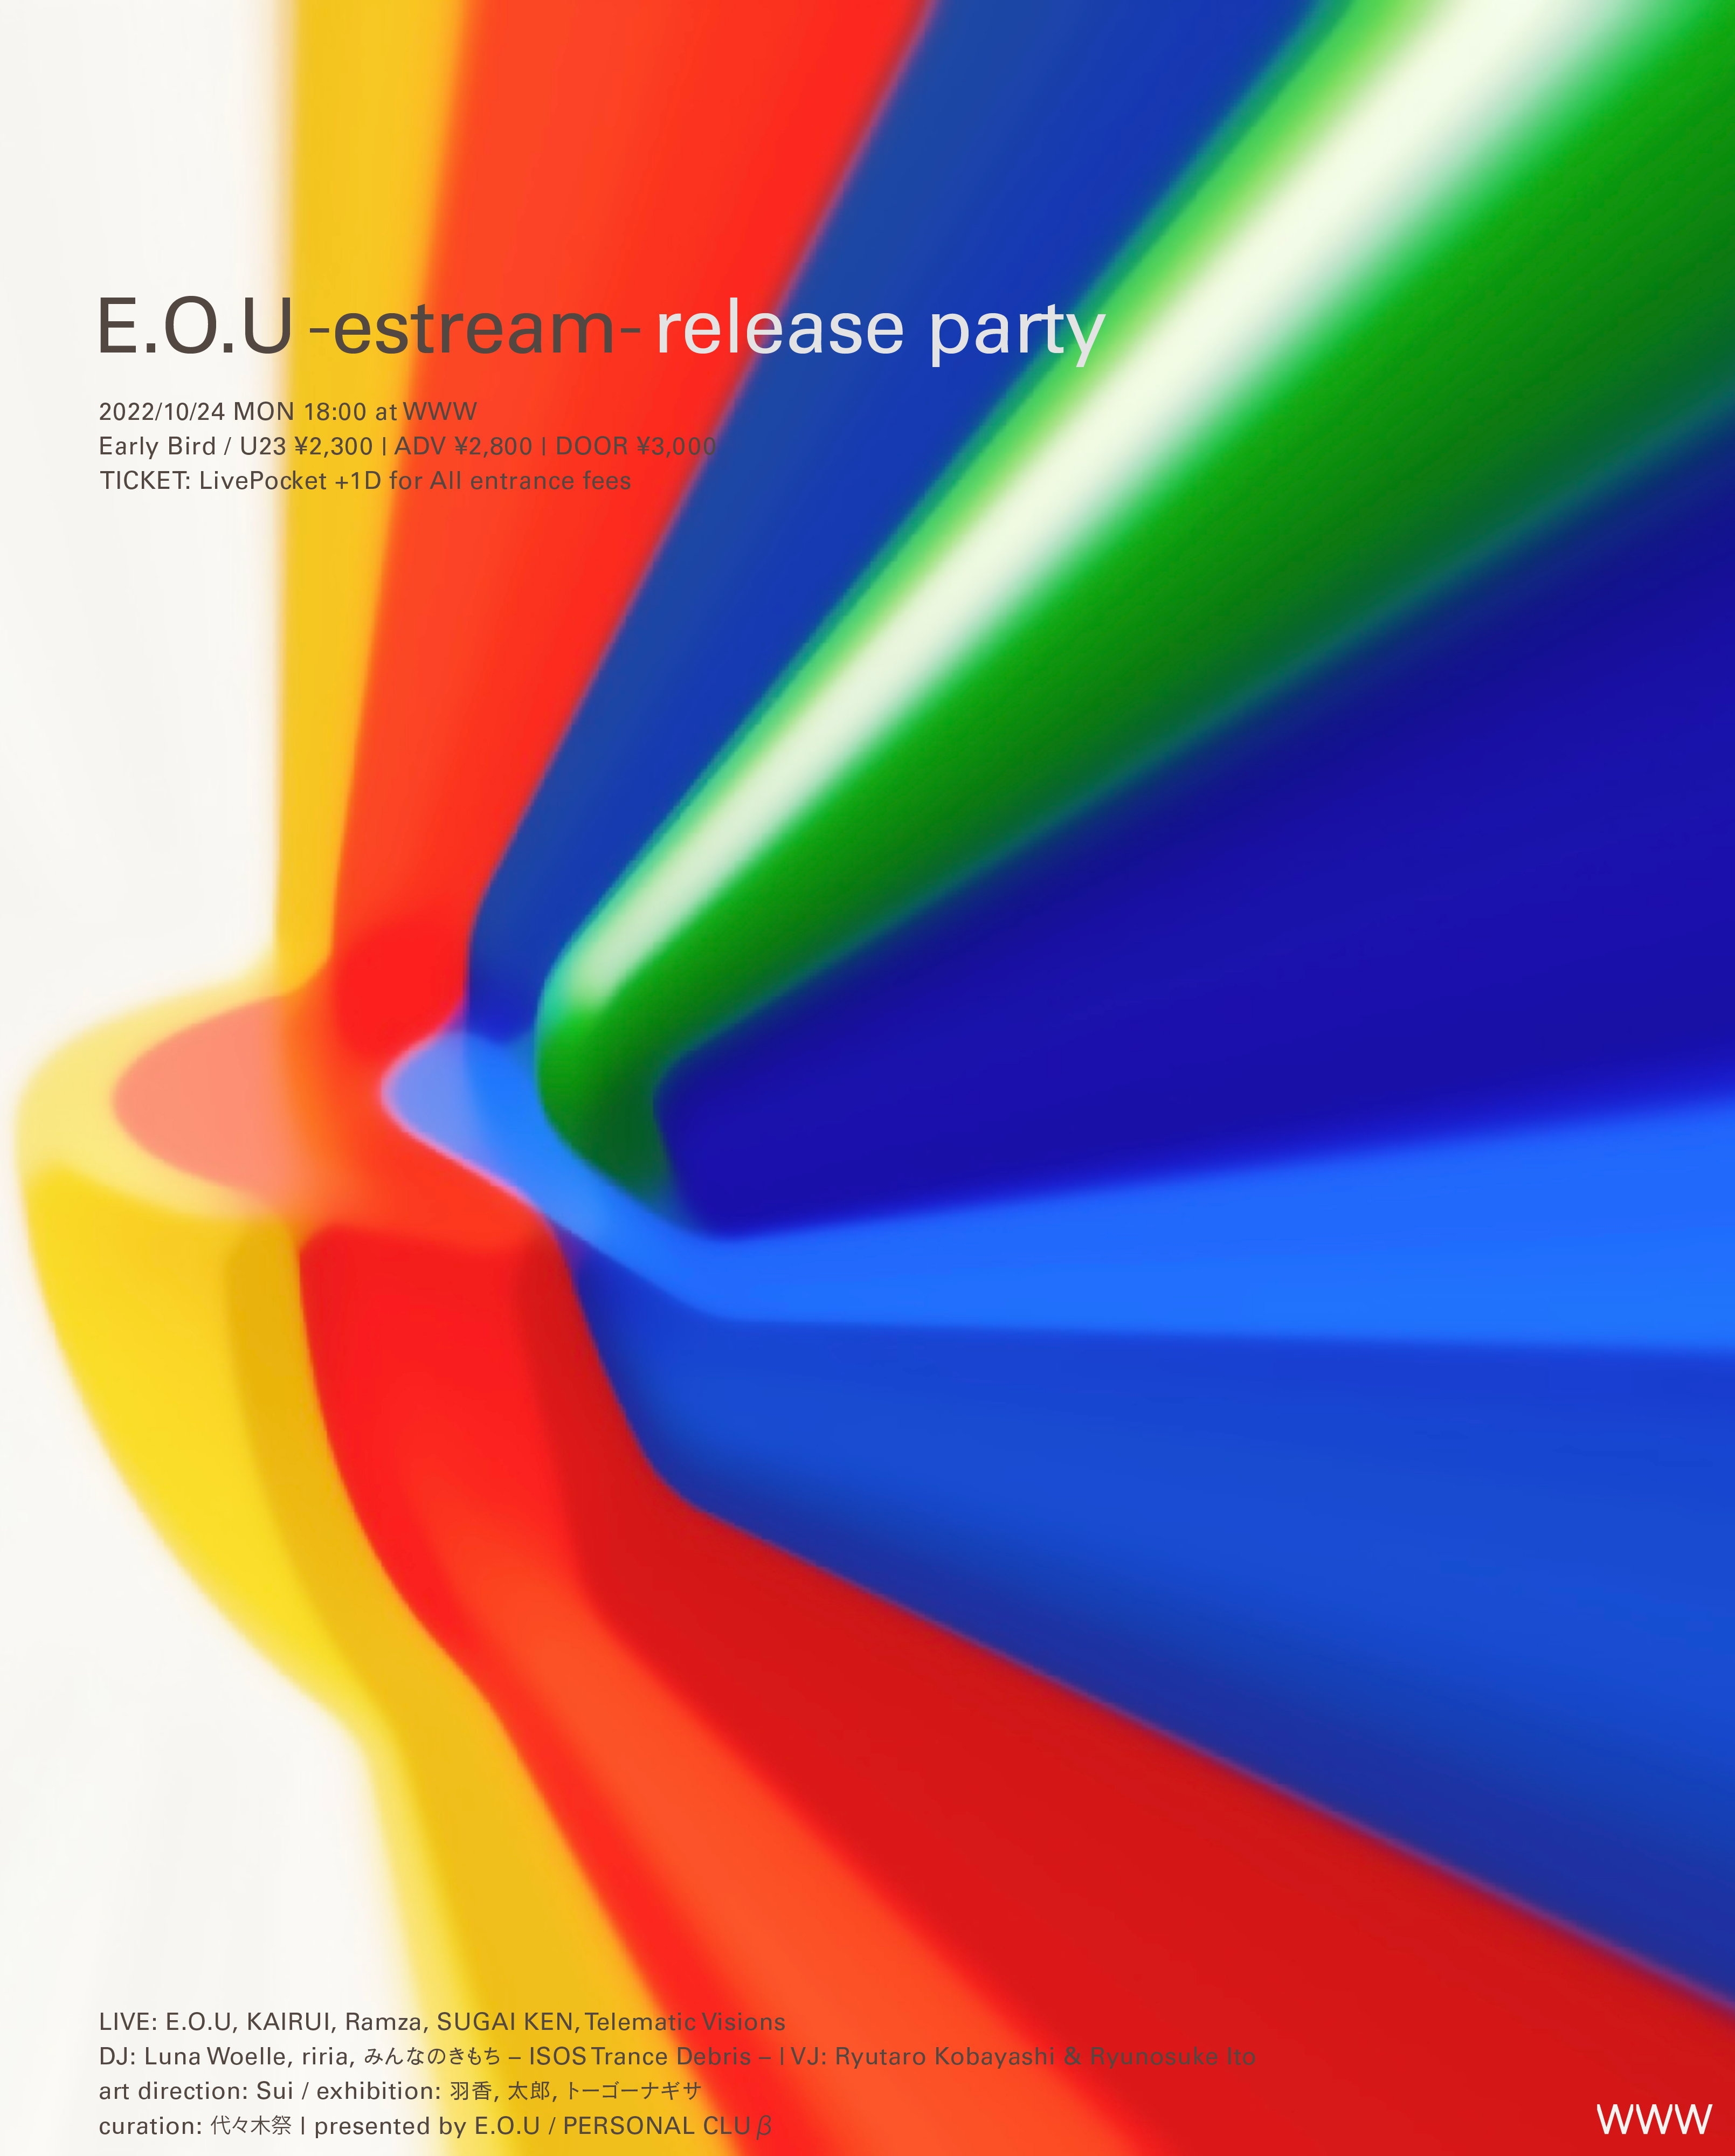 E.O.U -estream- release party at WWW